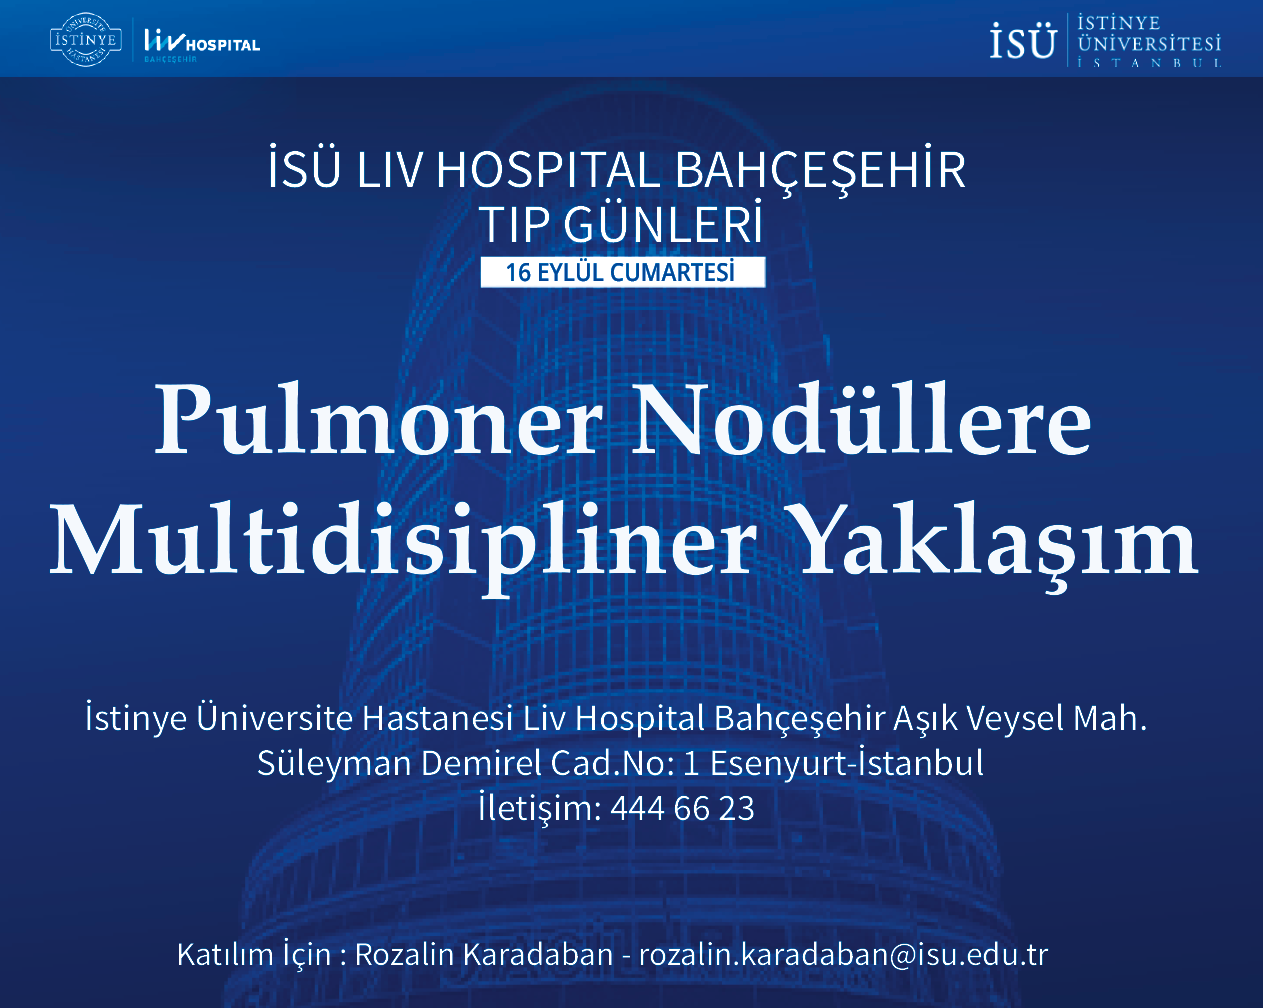 ISU Liv Hospital Bahçeşehir Medical Days